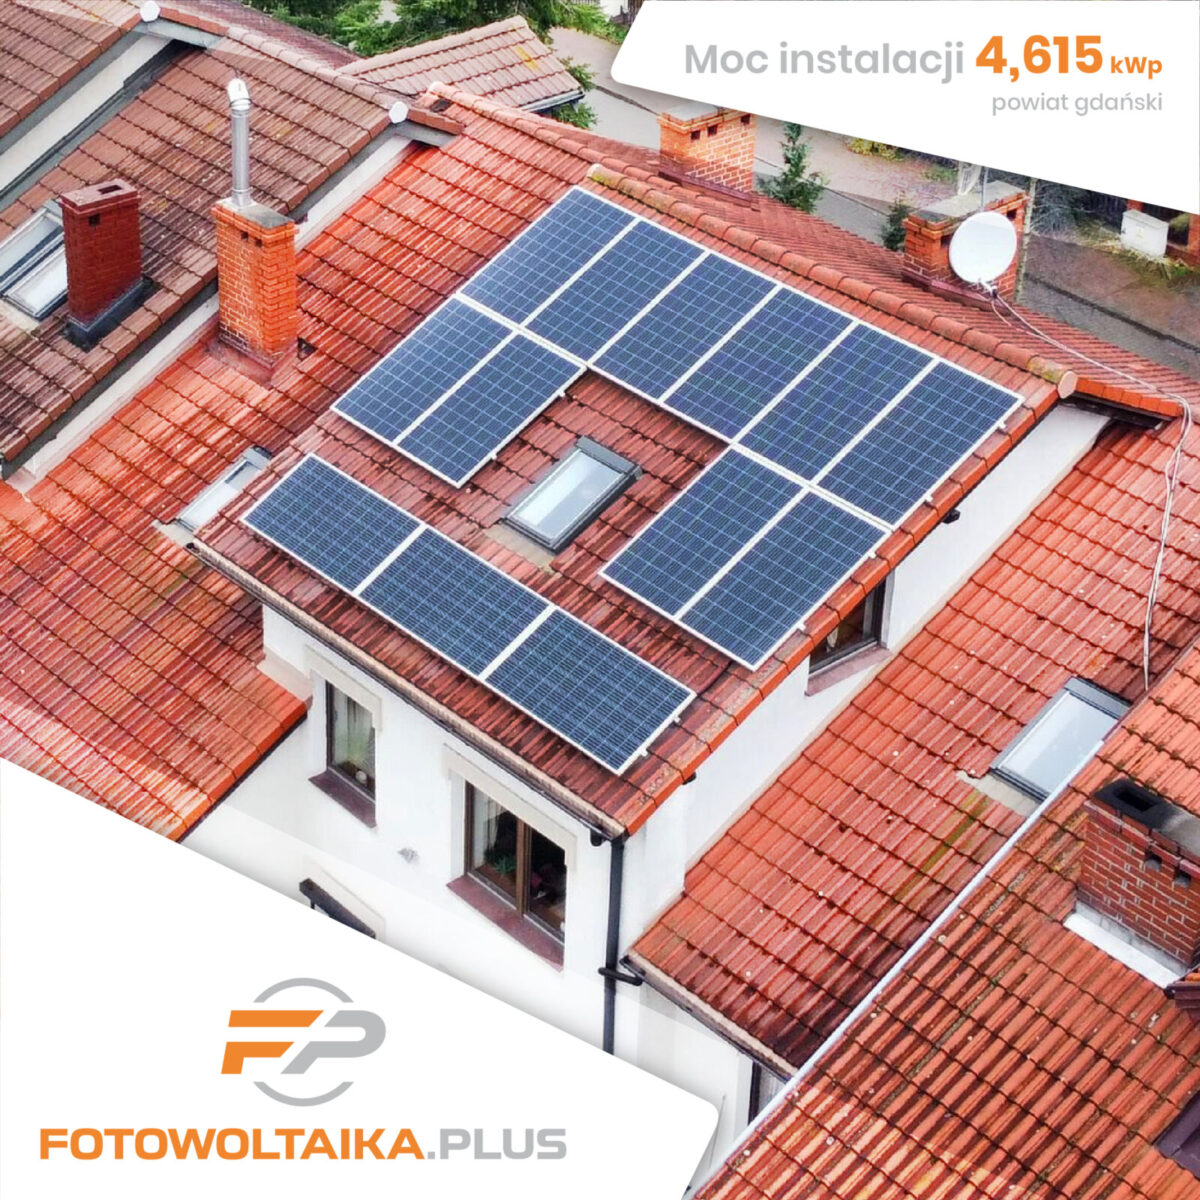 instalacja fotowoltaiczna powiat gdański 4,615 kWp